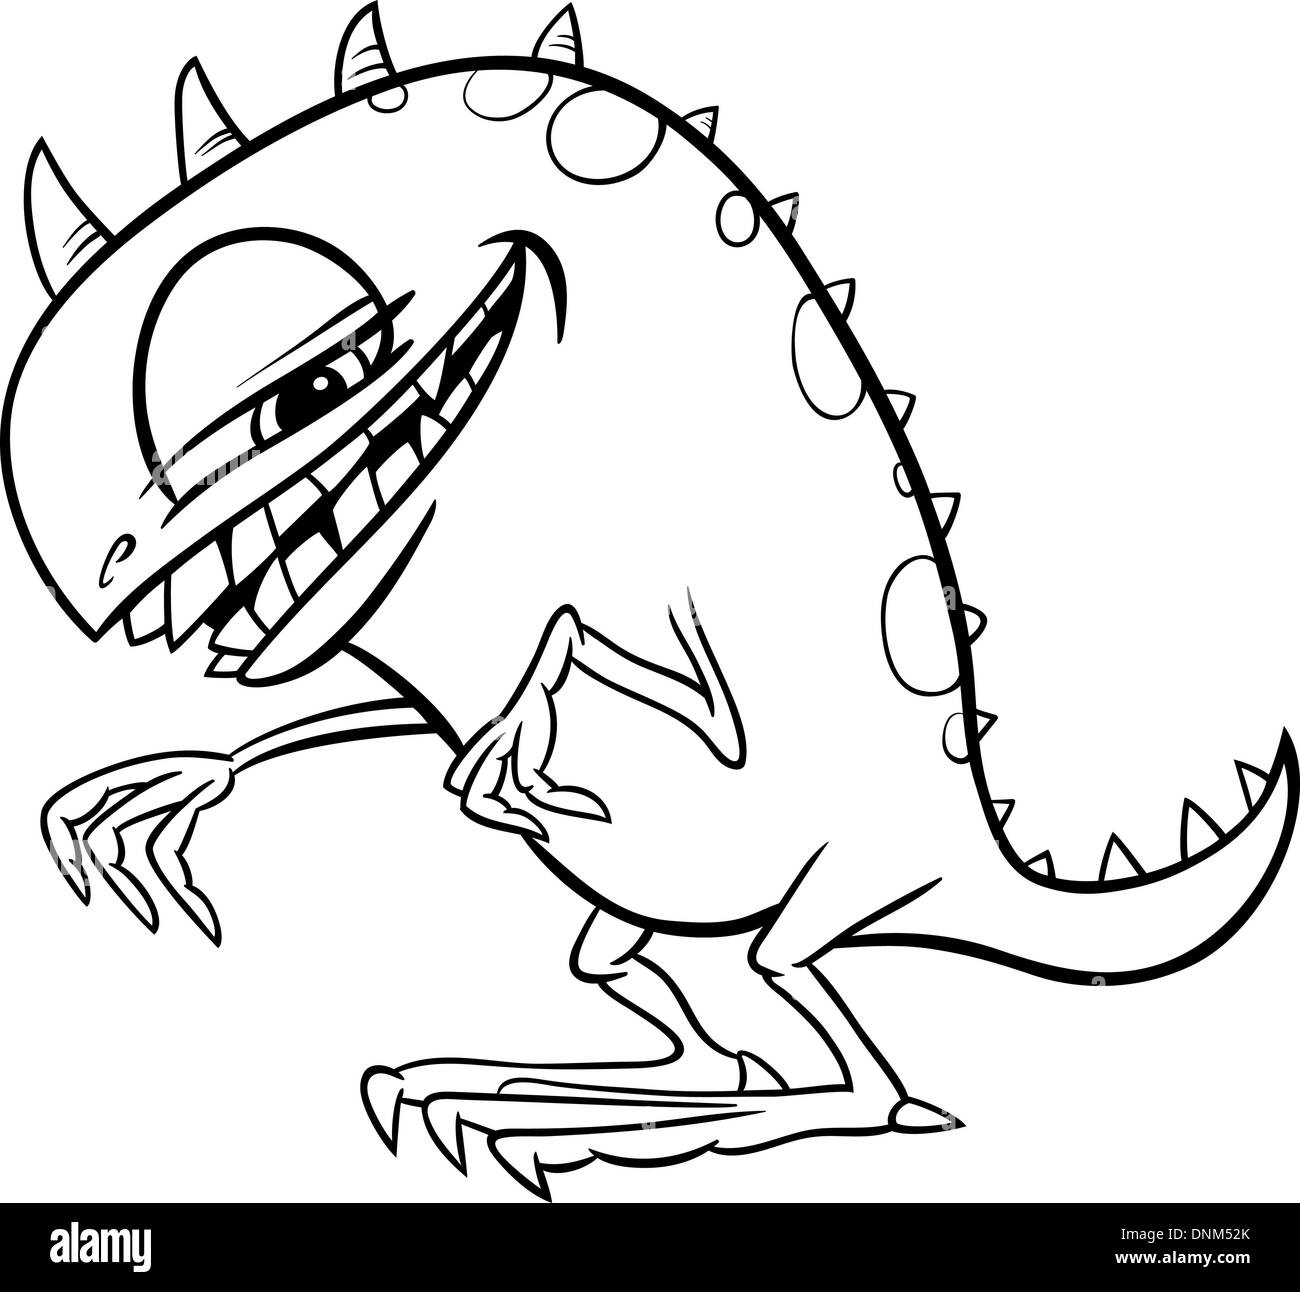 Schwarz / Weiß Cartoon Illustration der lustige Monster oder Schreck oder Drehgestell für Kinder zum Ausmalen Stock Vektor